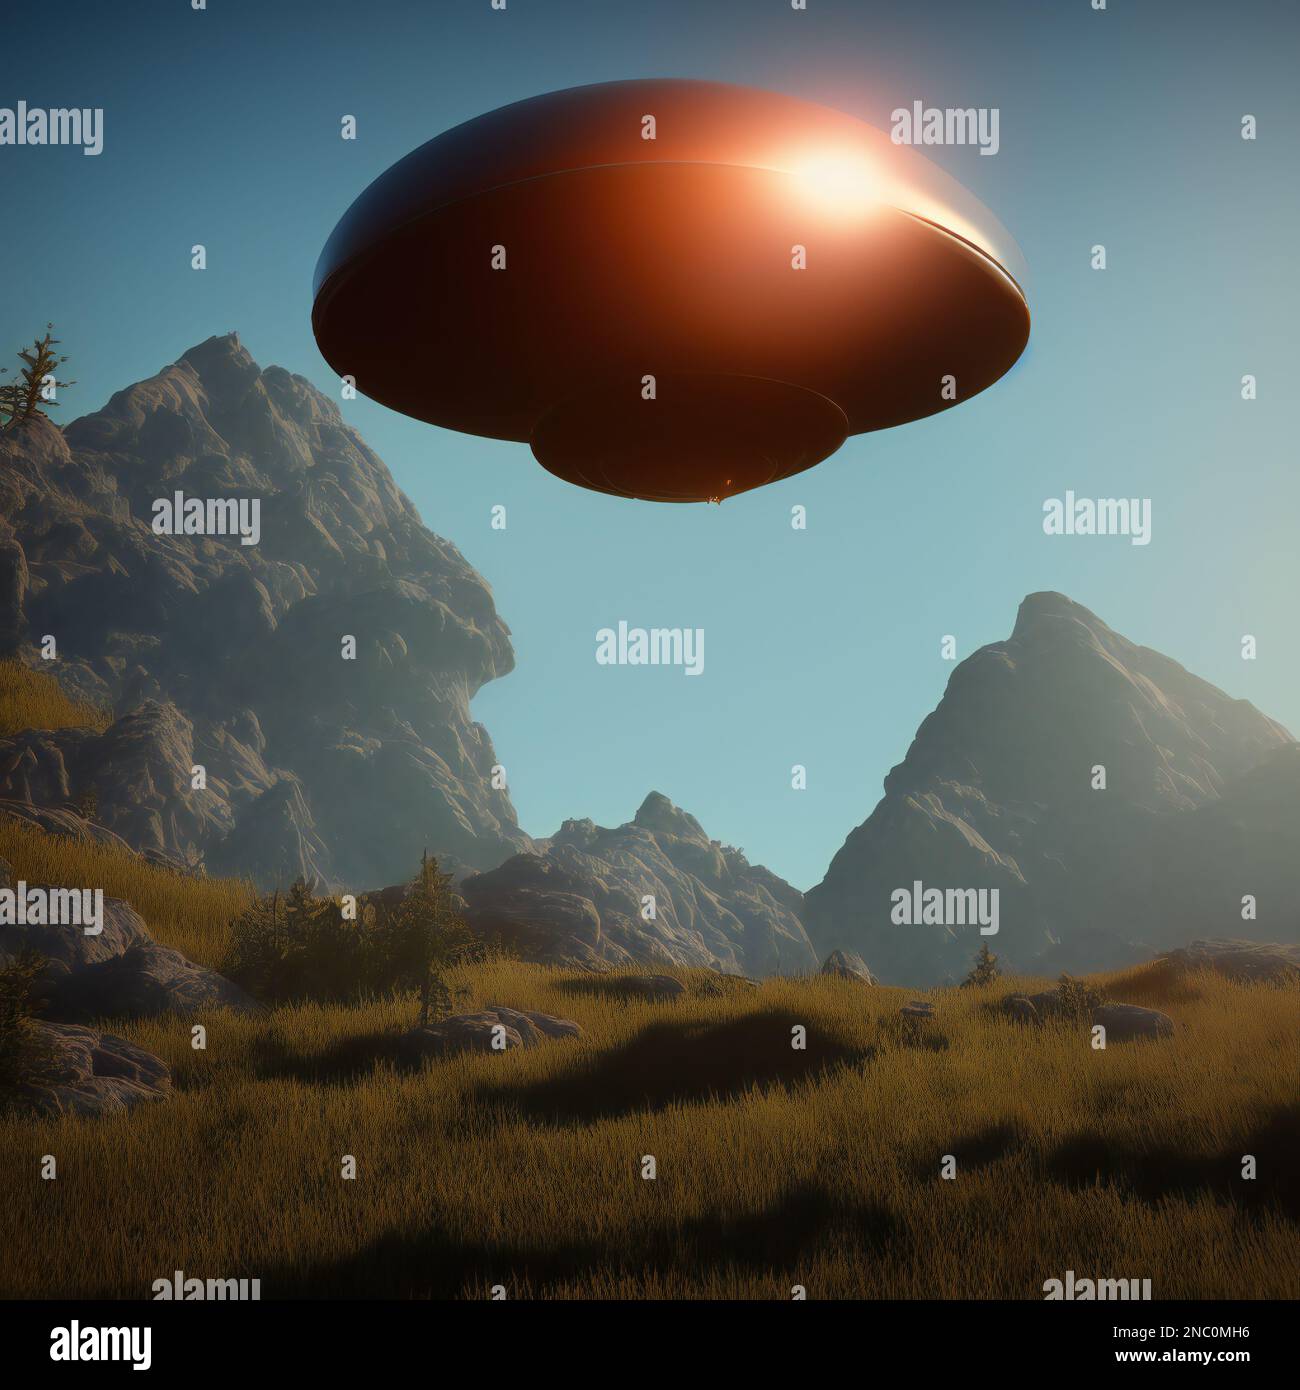 Platillo volador visitando un planeta similar a la Tierra, ilustración Foto de stock